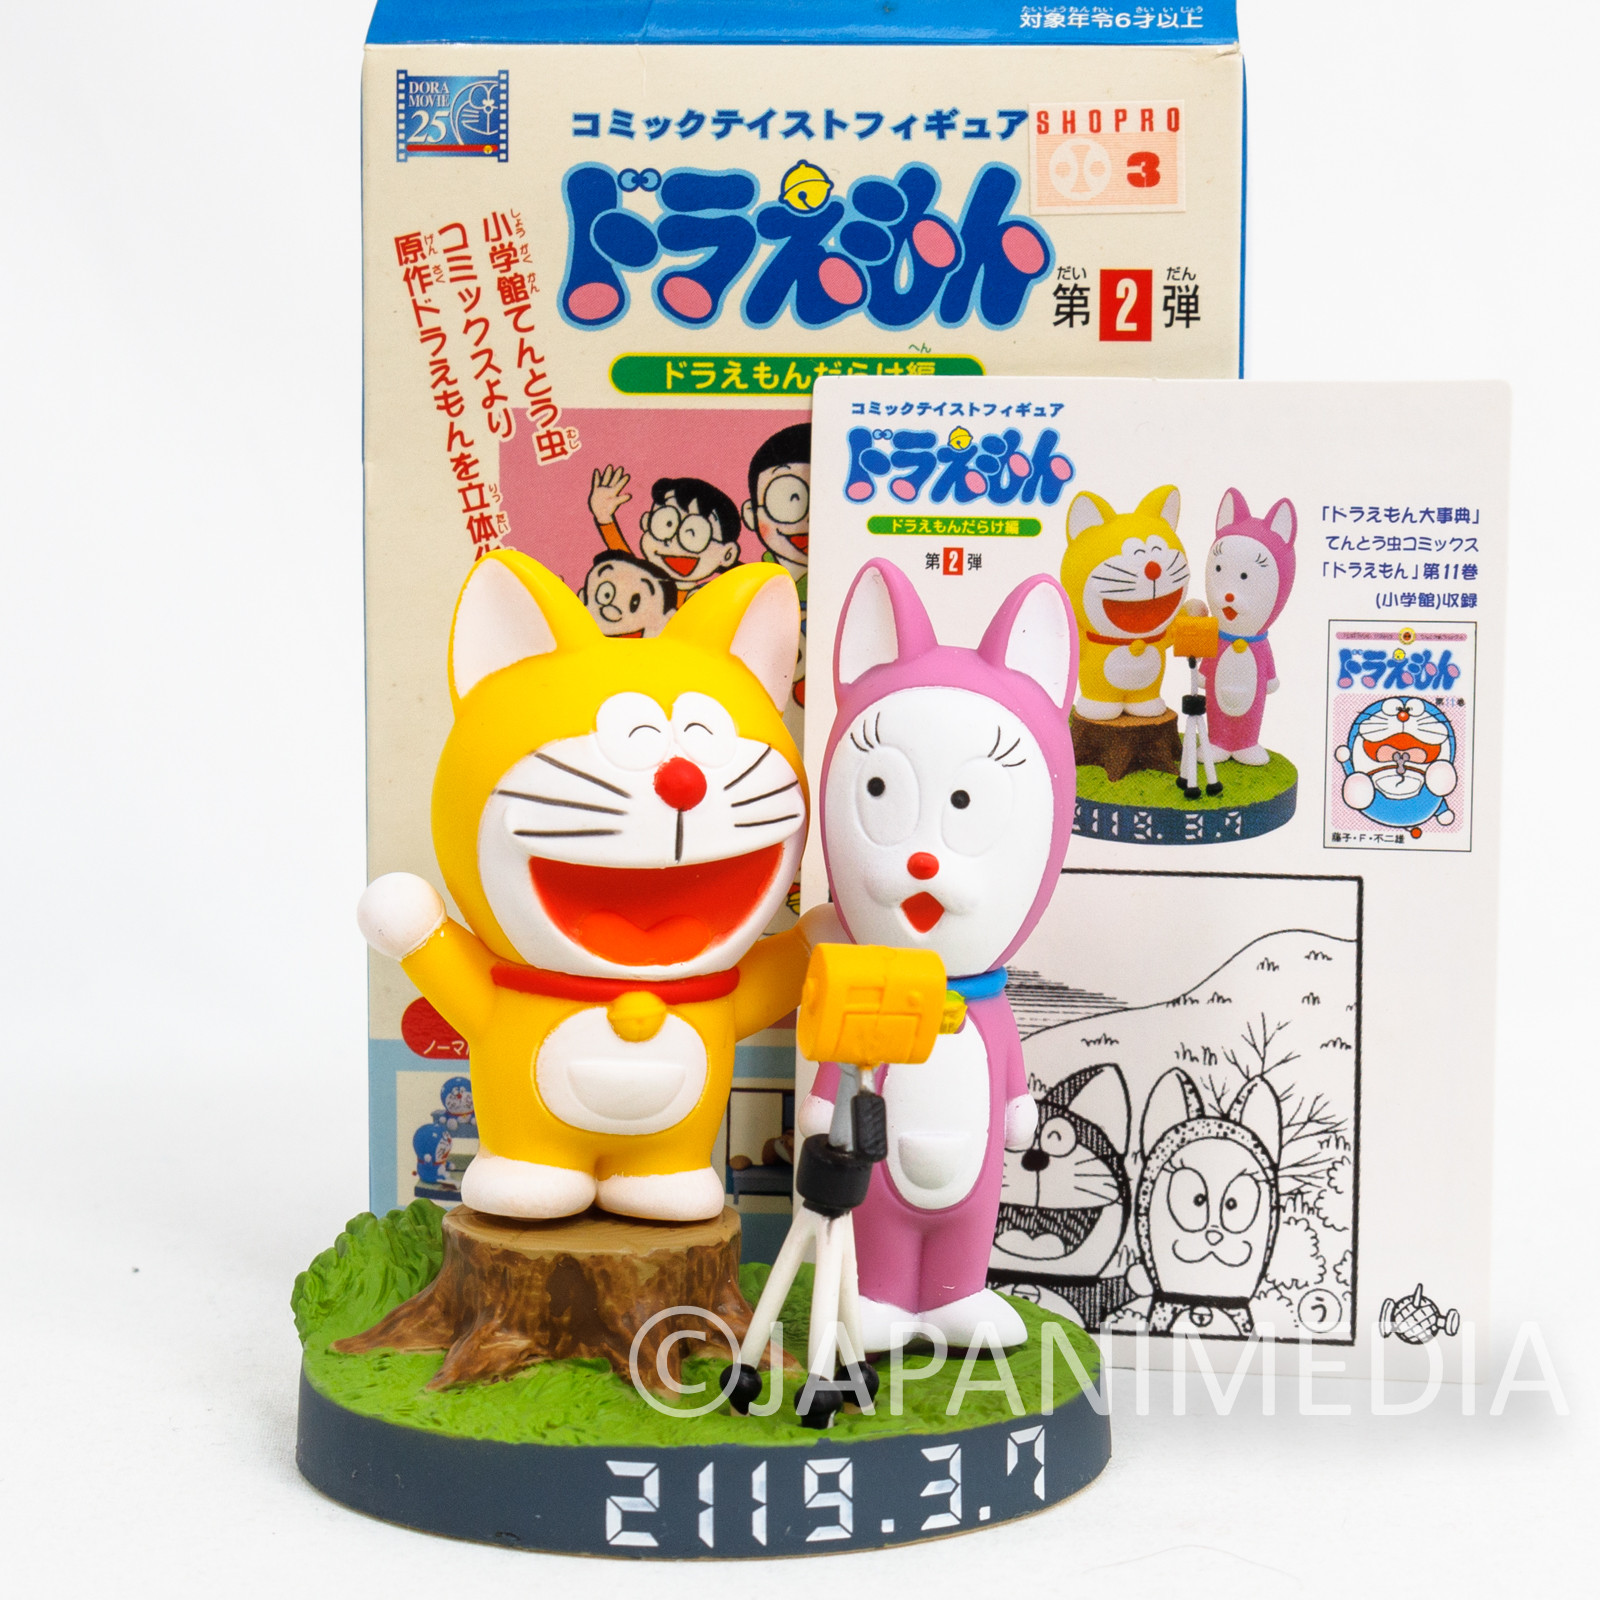 Doraemon Dating with Girl in Year 2119 Diorama Figure FUJIKO FUJIO